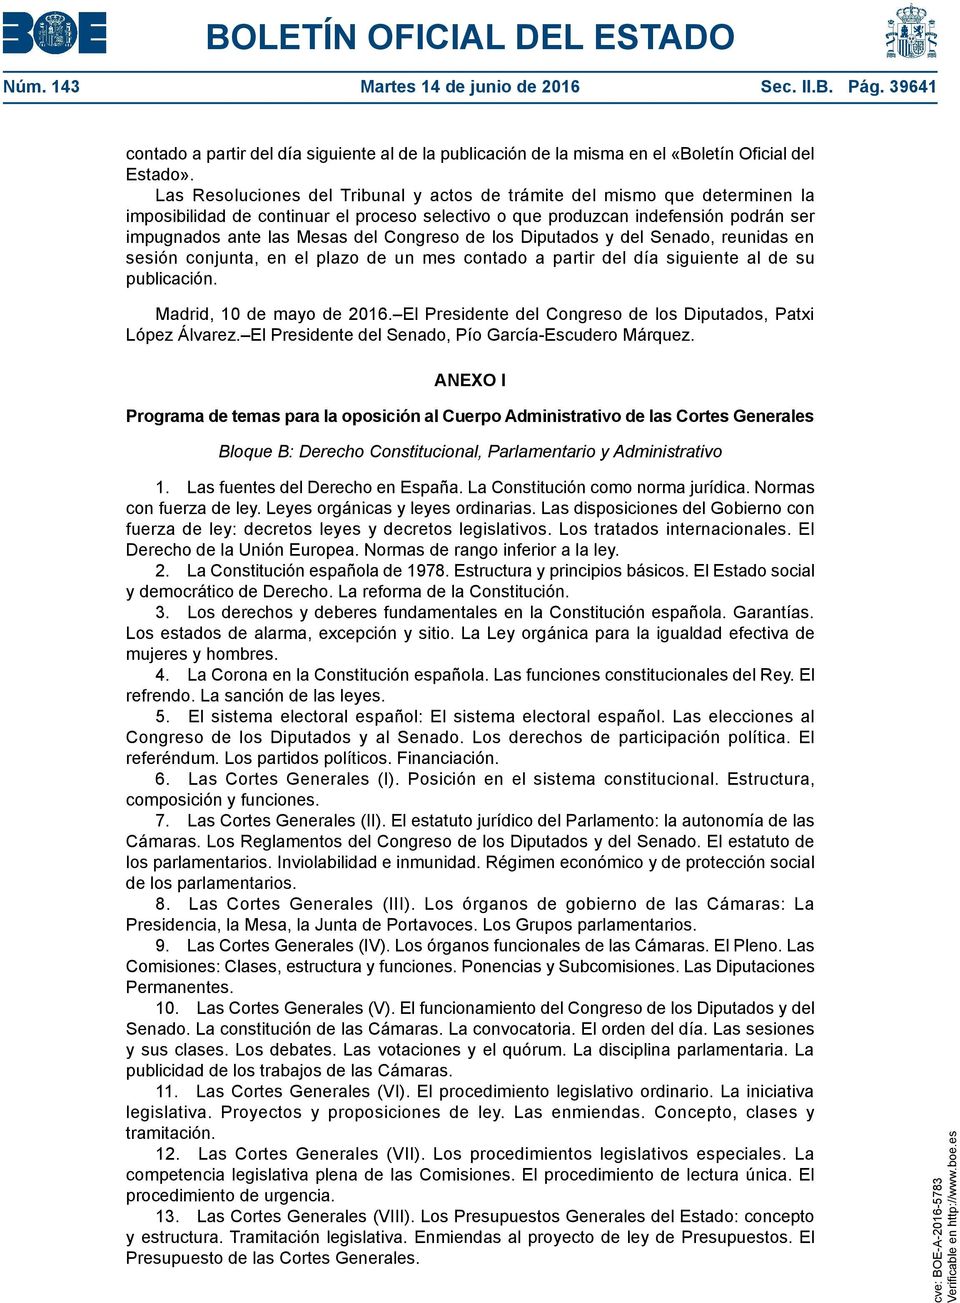 Congreso de los Diputados y del Senado, reunidas en sesión conjunta, en el plazo de un mes contado a partir del día siguiente al de su publicación. Madrid, 10 de mayo de 2016.